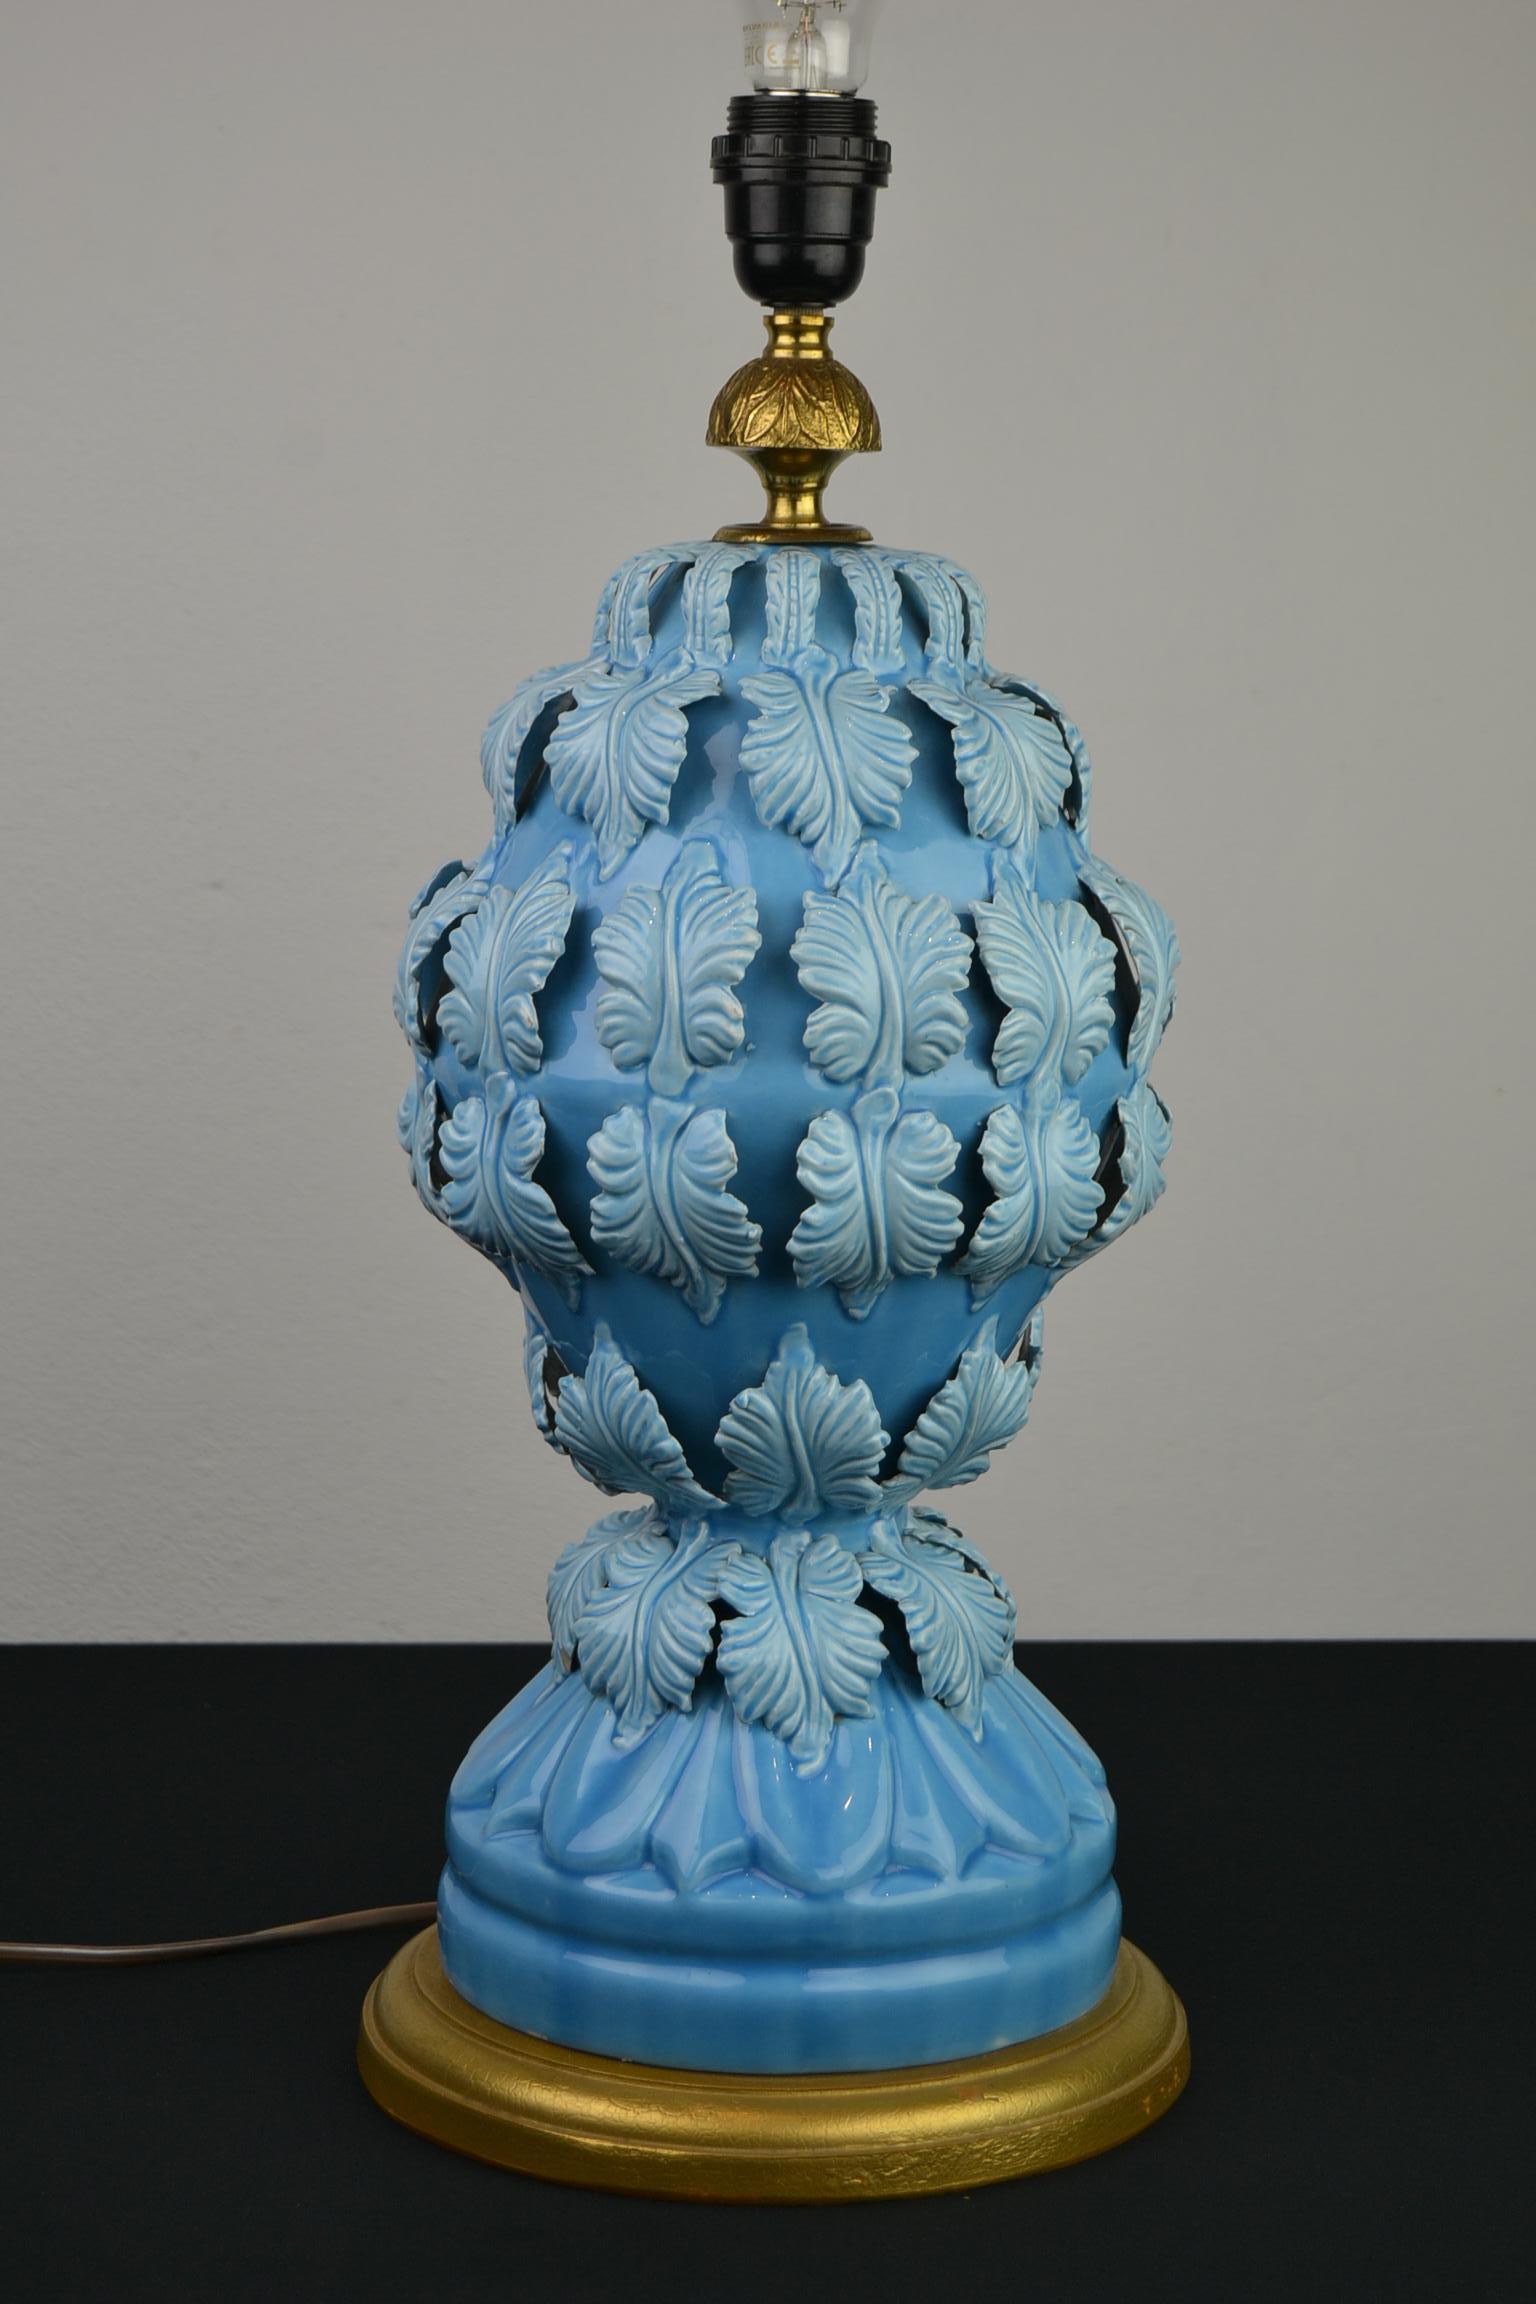 Lampe de table bleue en céramique avec des feuilles par Ceramics Manises Espagne. 
Cette lampe de table en céramique bleu clair - turquoise a de belles feuilles tout autour de 
et est montée sur une base en bois doré. 
Une lampe de table sculpturale